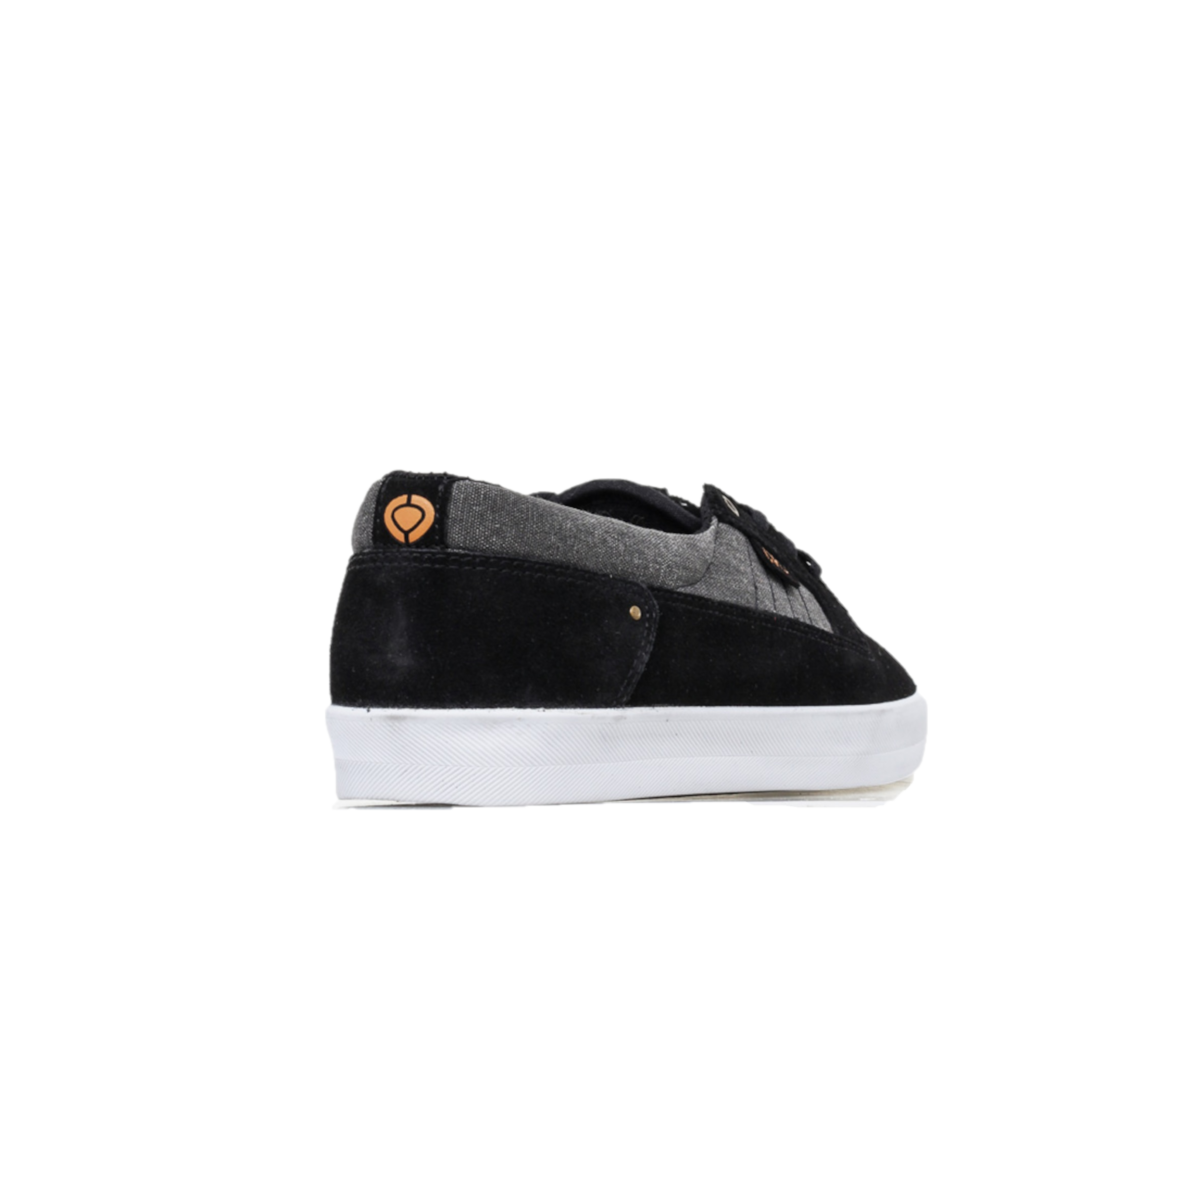 CIRCA LANCER-BKIG LANCER MN'S (Medium) Black/Ink/Gold Canvas Skate Shoes